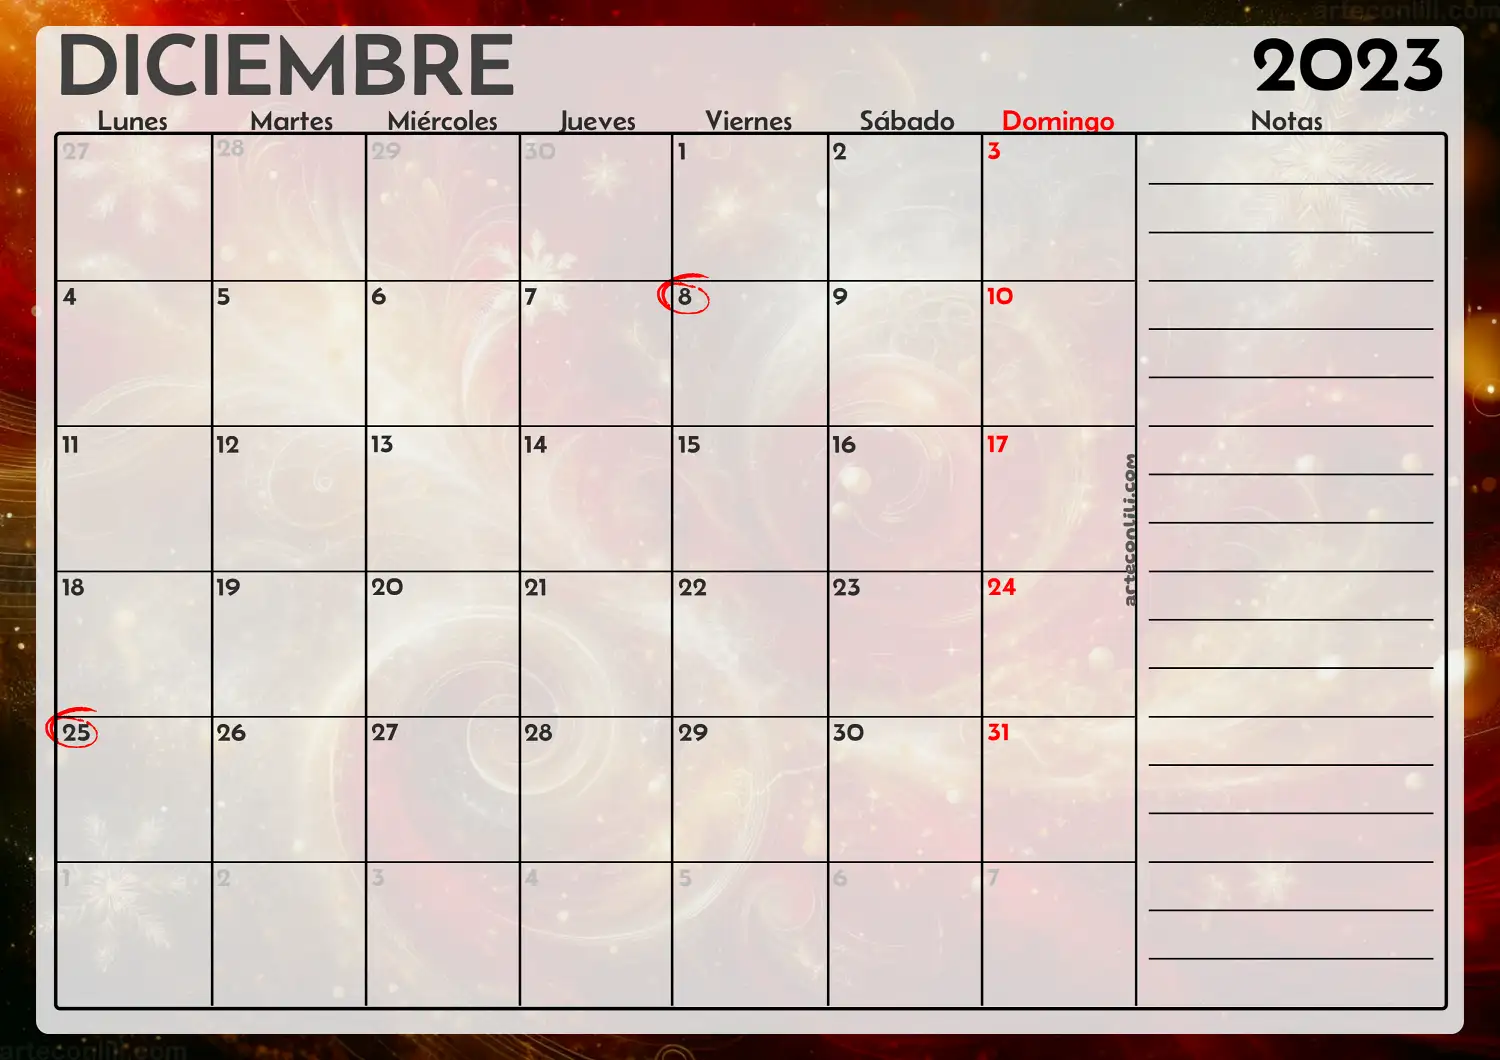 calendario diciembre 2023 arteconlili.com6